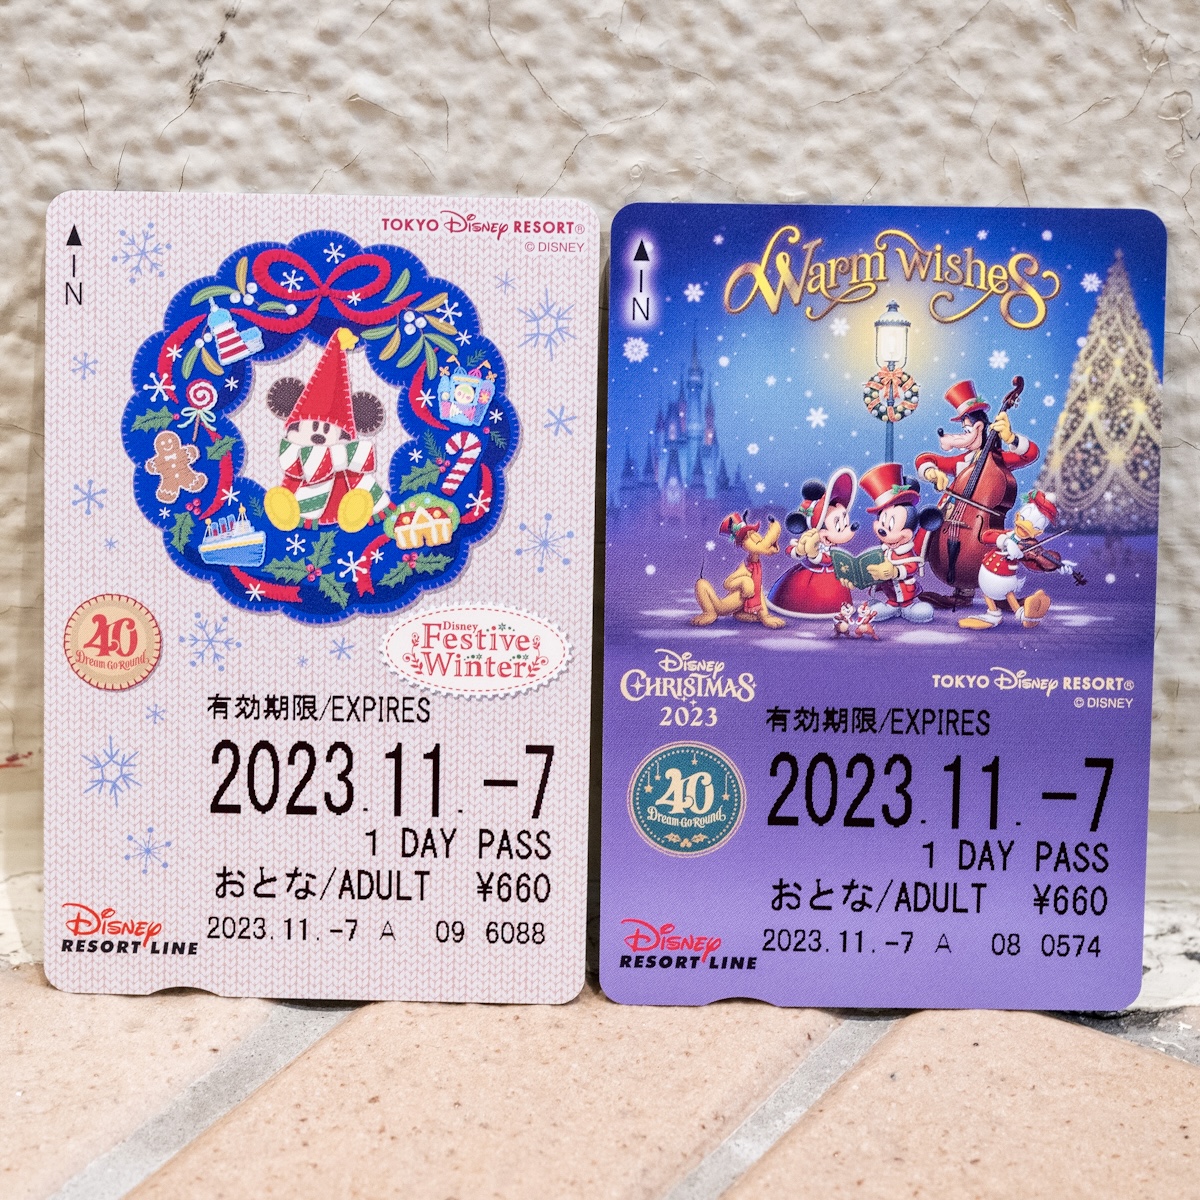  ディズニーリゾートライン“ディズニー・クリスマス2023”フリーきっぷ